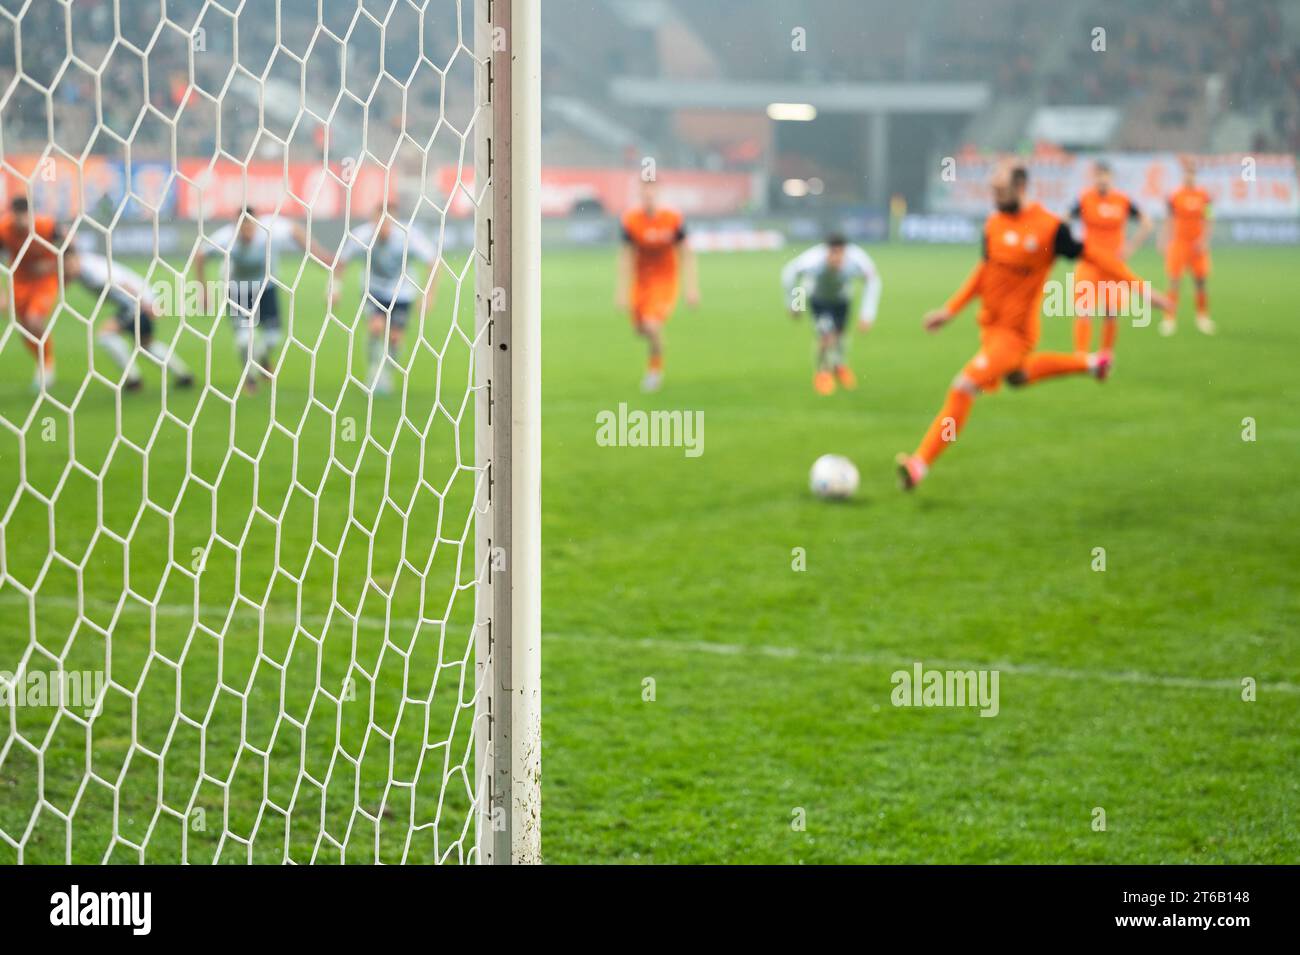 Details zum Torposten mit Netz- und Fußballspieler während des Elfmeterschießes im Hintergrund. Stockfoto